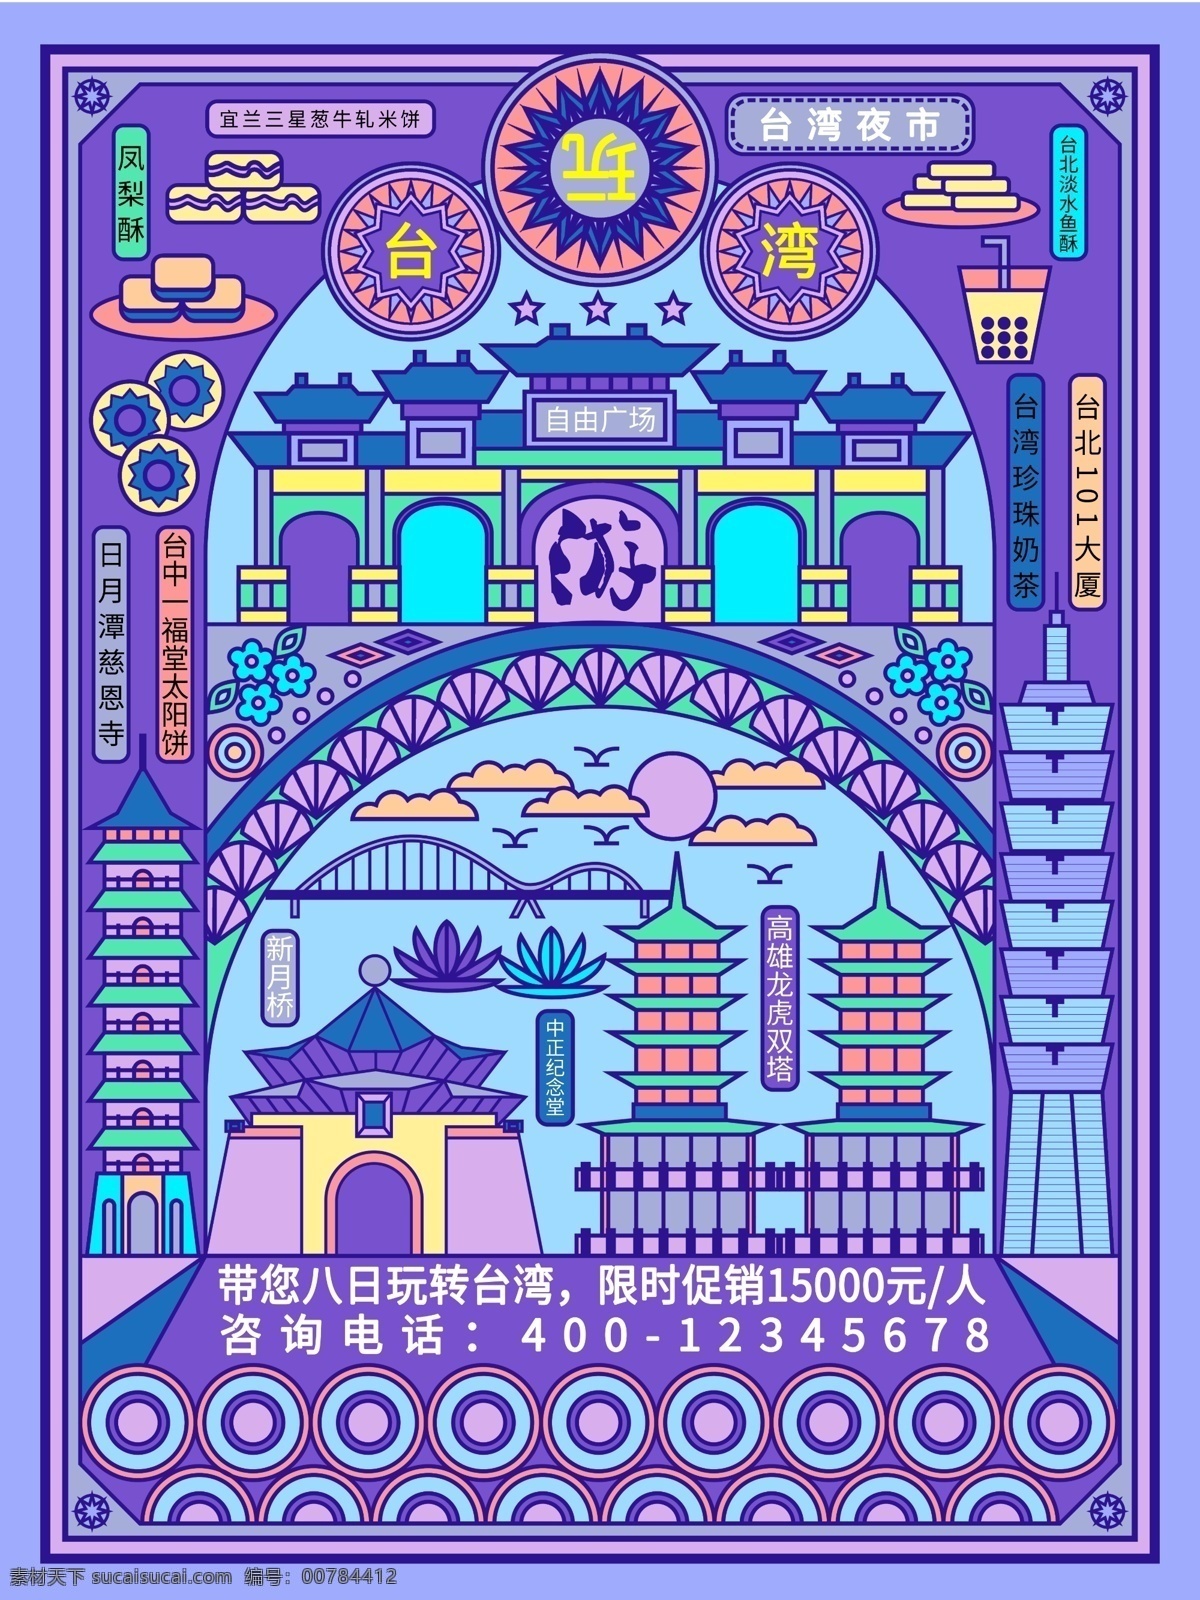 原创 趋势 线性 视界 风格 台湾 景点 美食 旅游 海报 手绘 线性视界 紫色 宣传单 建筑